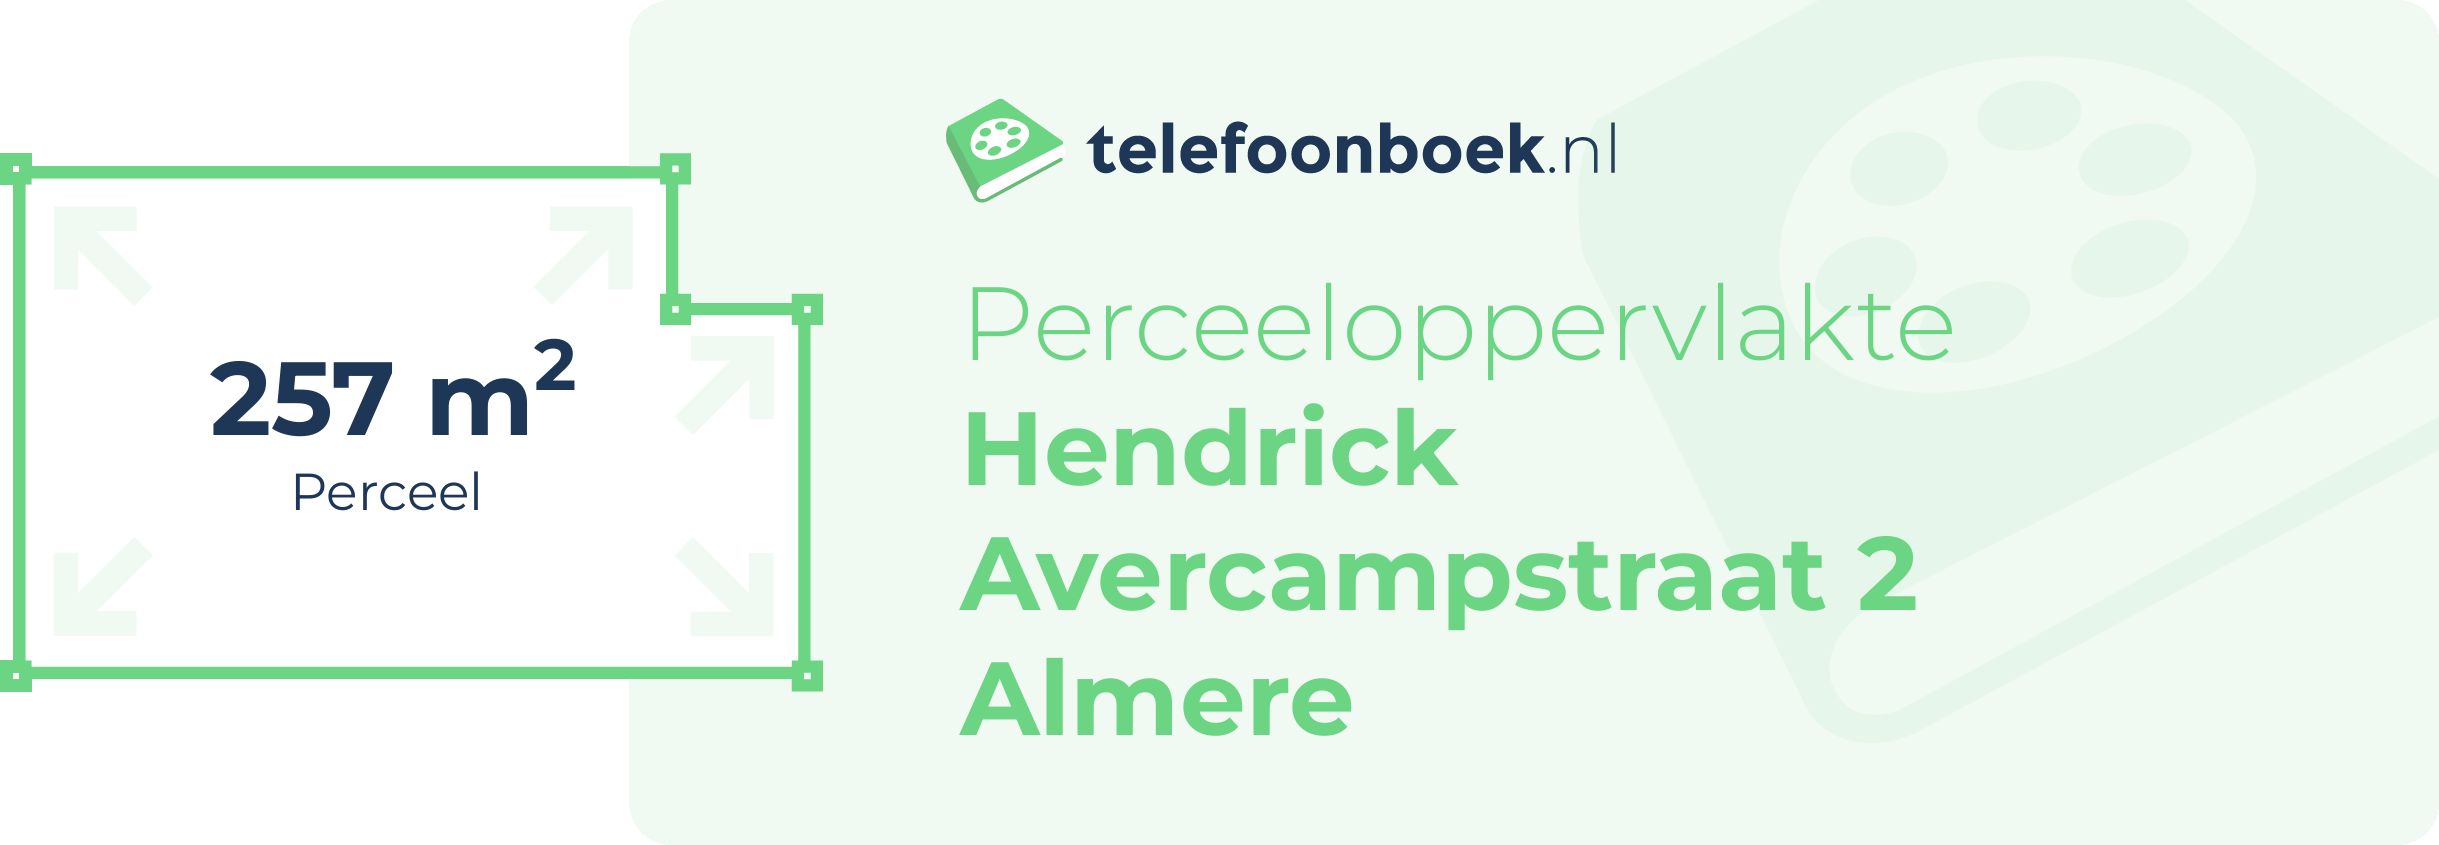 Perceeloppervlakte Hendrick Avercampstraat 2 Almere